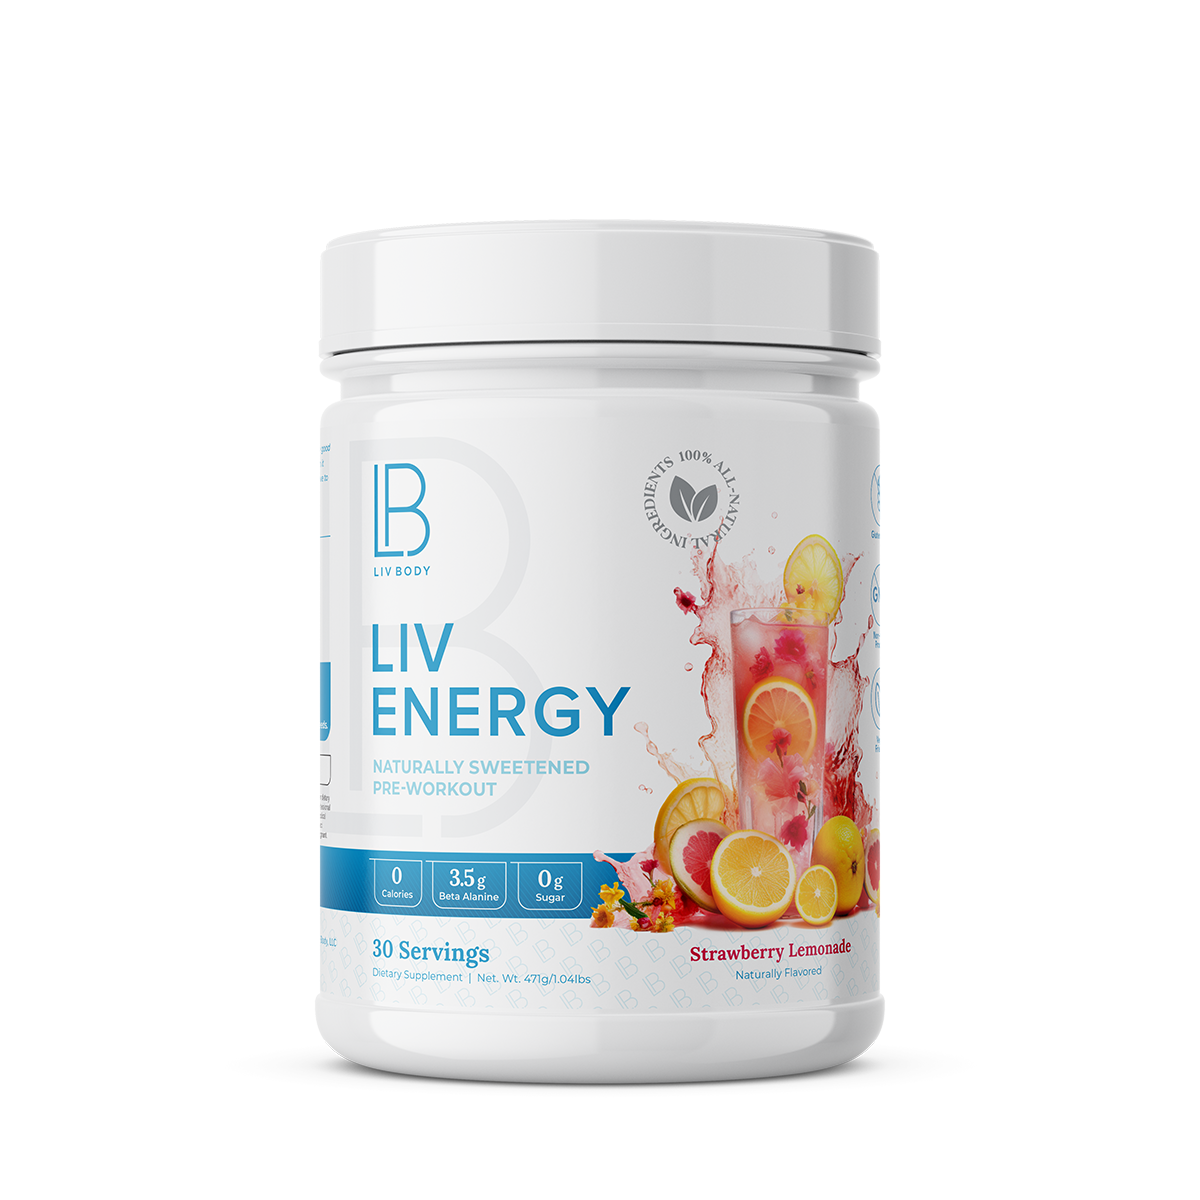 LIV Body - LIV Energy